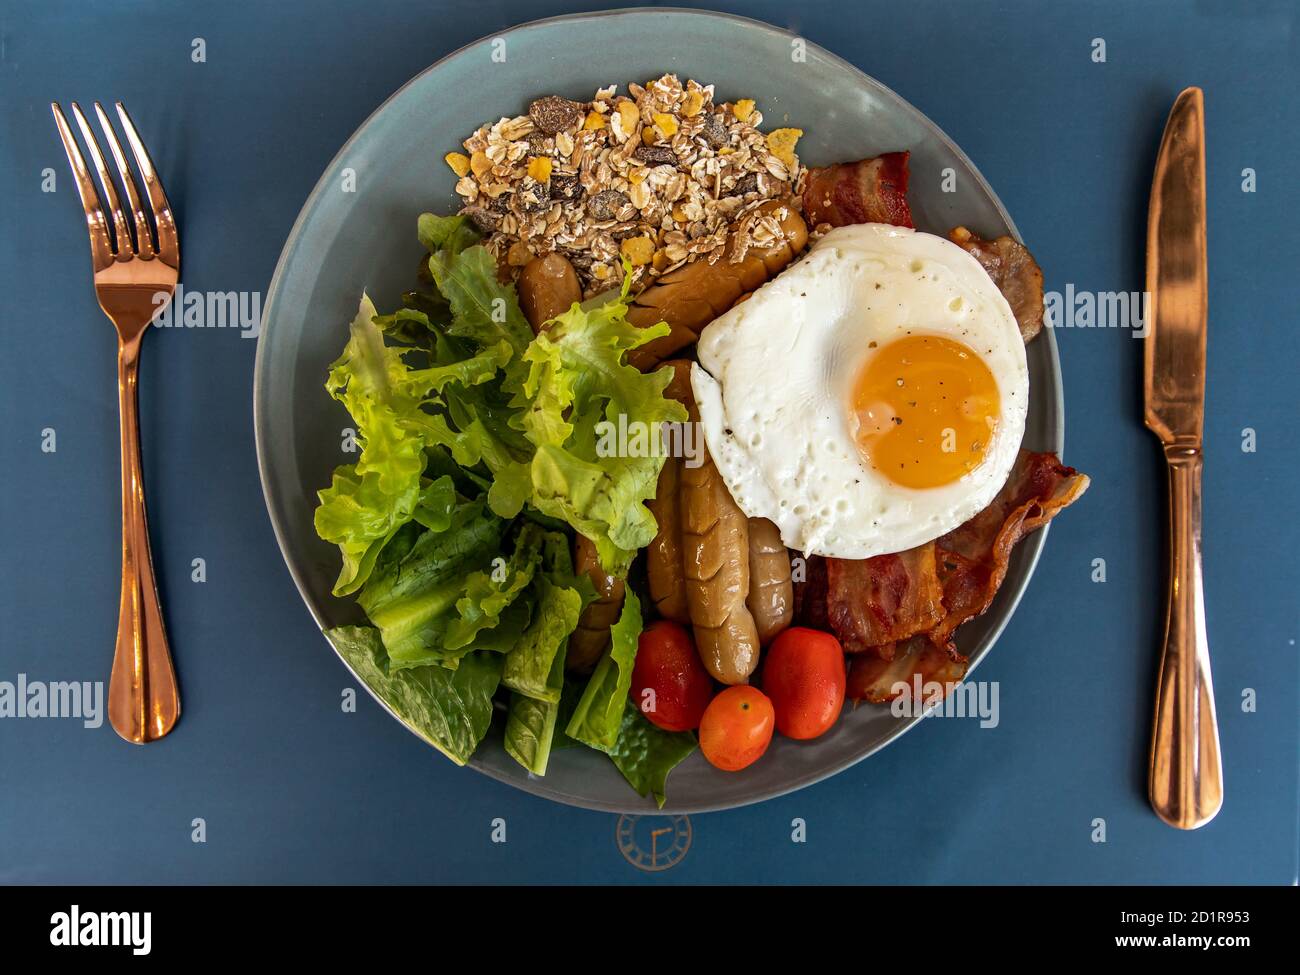 Petit-déjeuner continental avec œufs frits, saucisses frites, légumes sur plaque blanche. Foyer sélectif. Banque D'Images